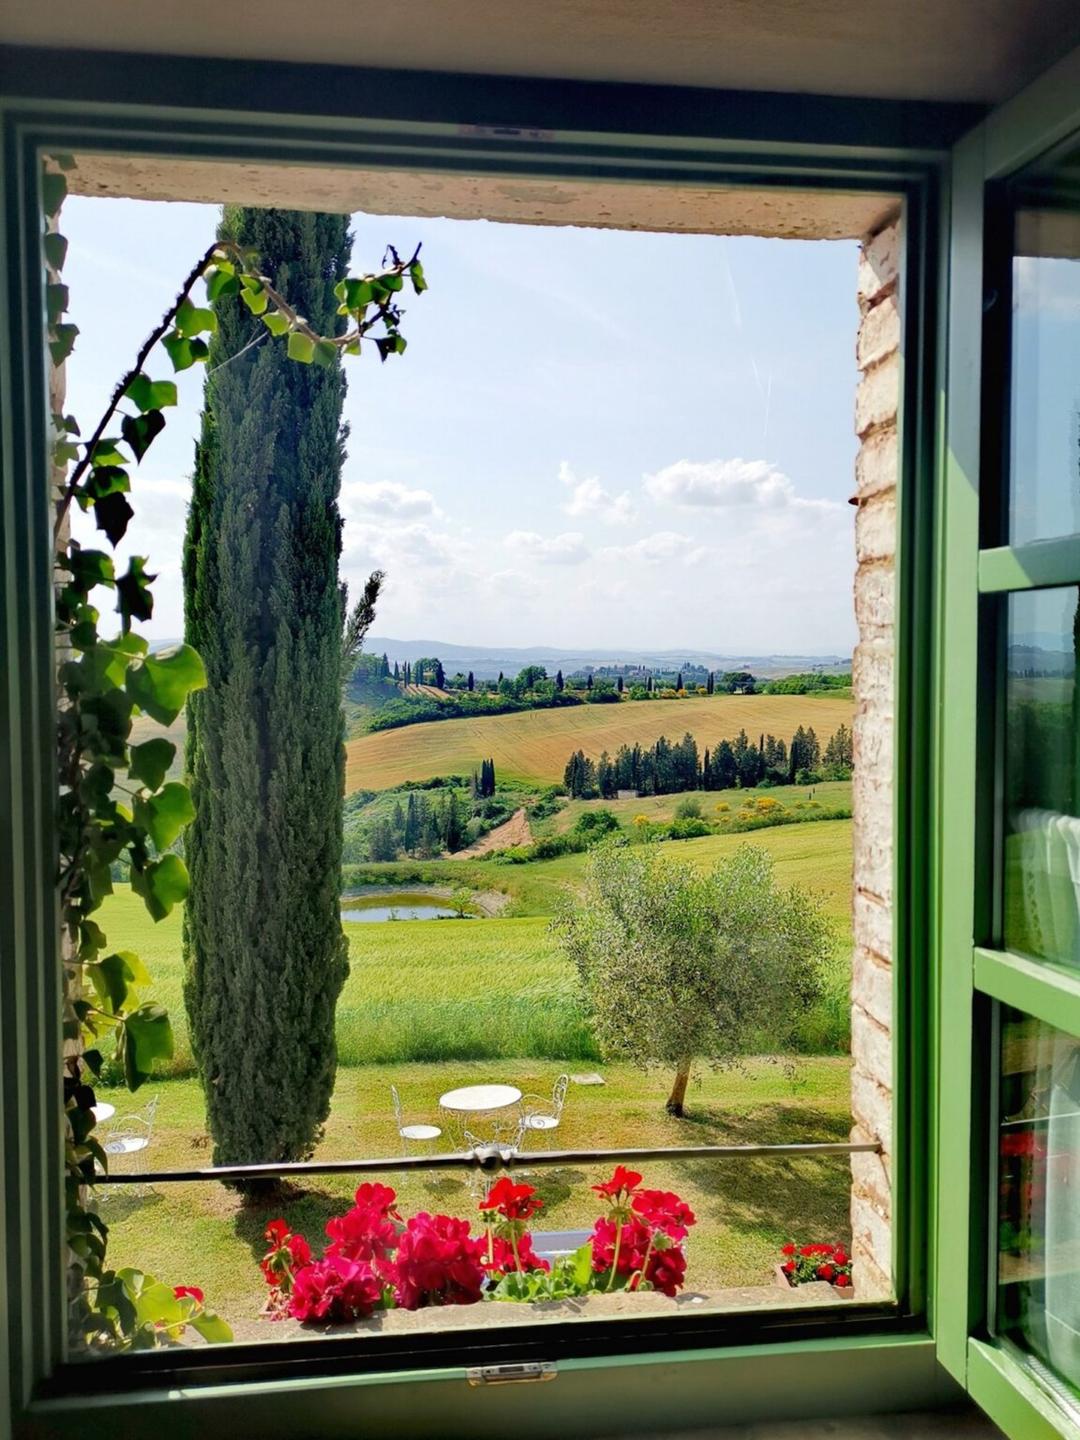 Ô cửa sổ trong mơ với ánh sáng, thiên nhiên và tiếng chim hót mỗi buổi bình minh tại Podere Salicotto